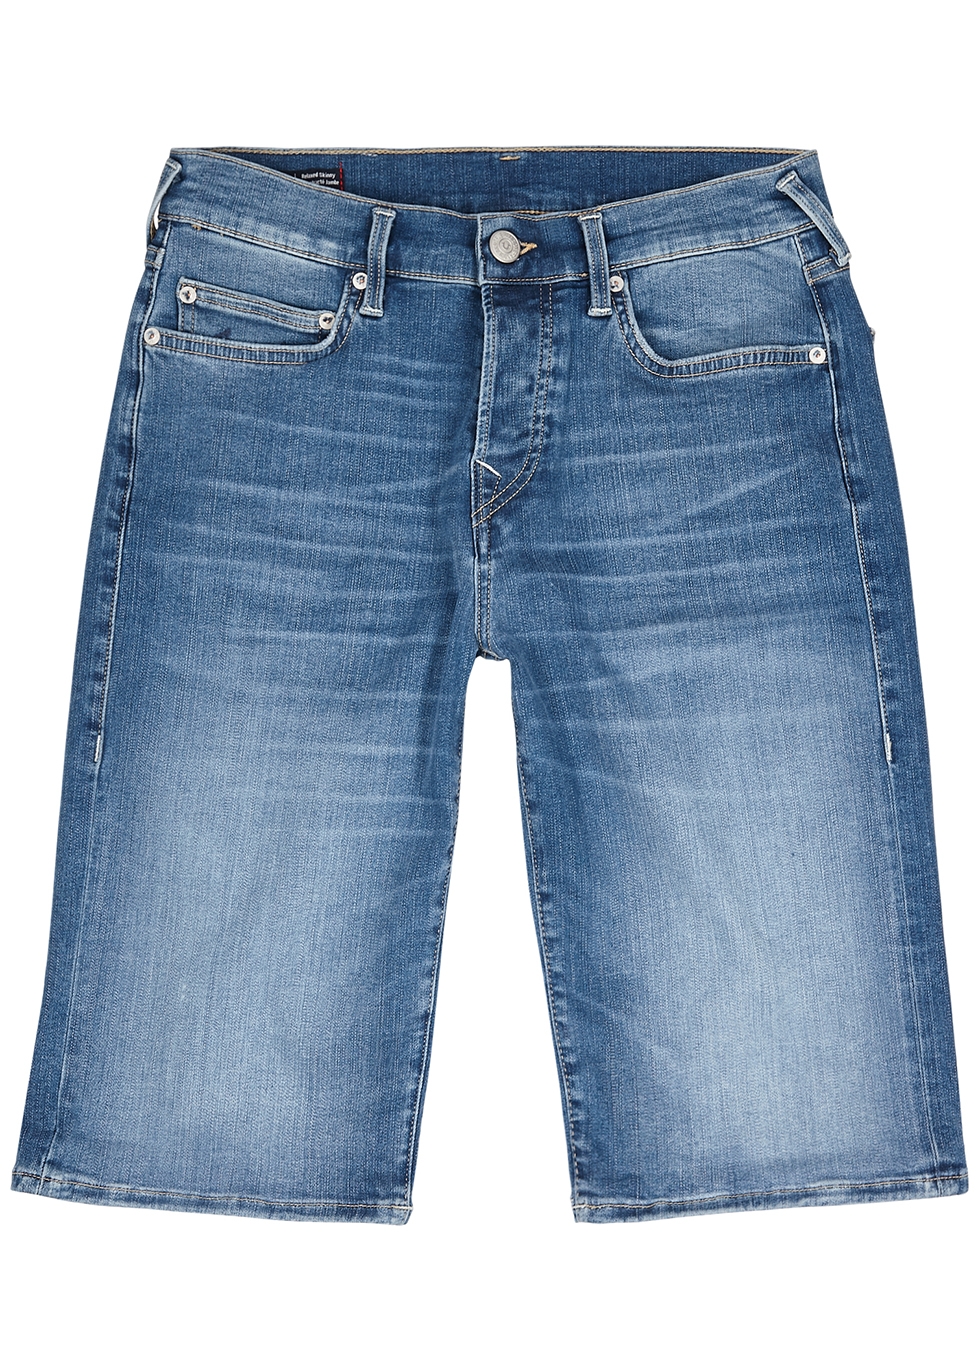 Rocco blue stretch-denim shorts